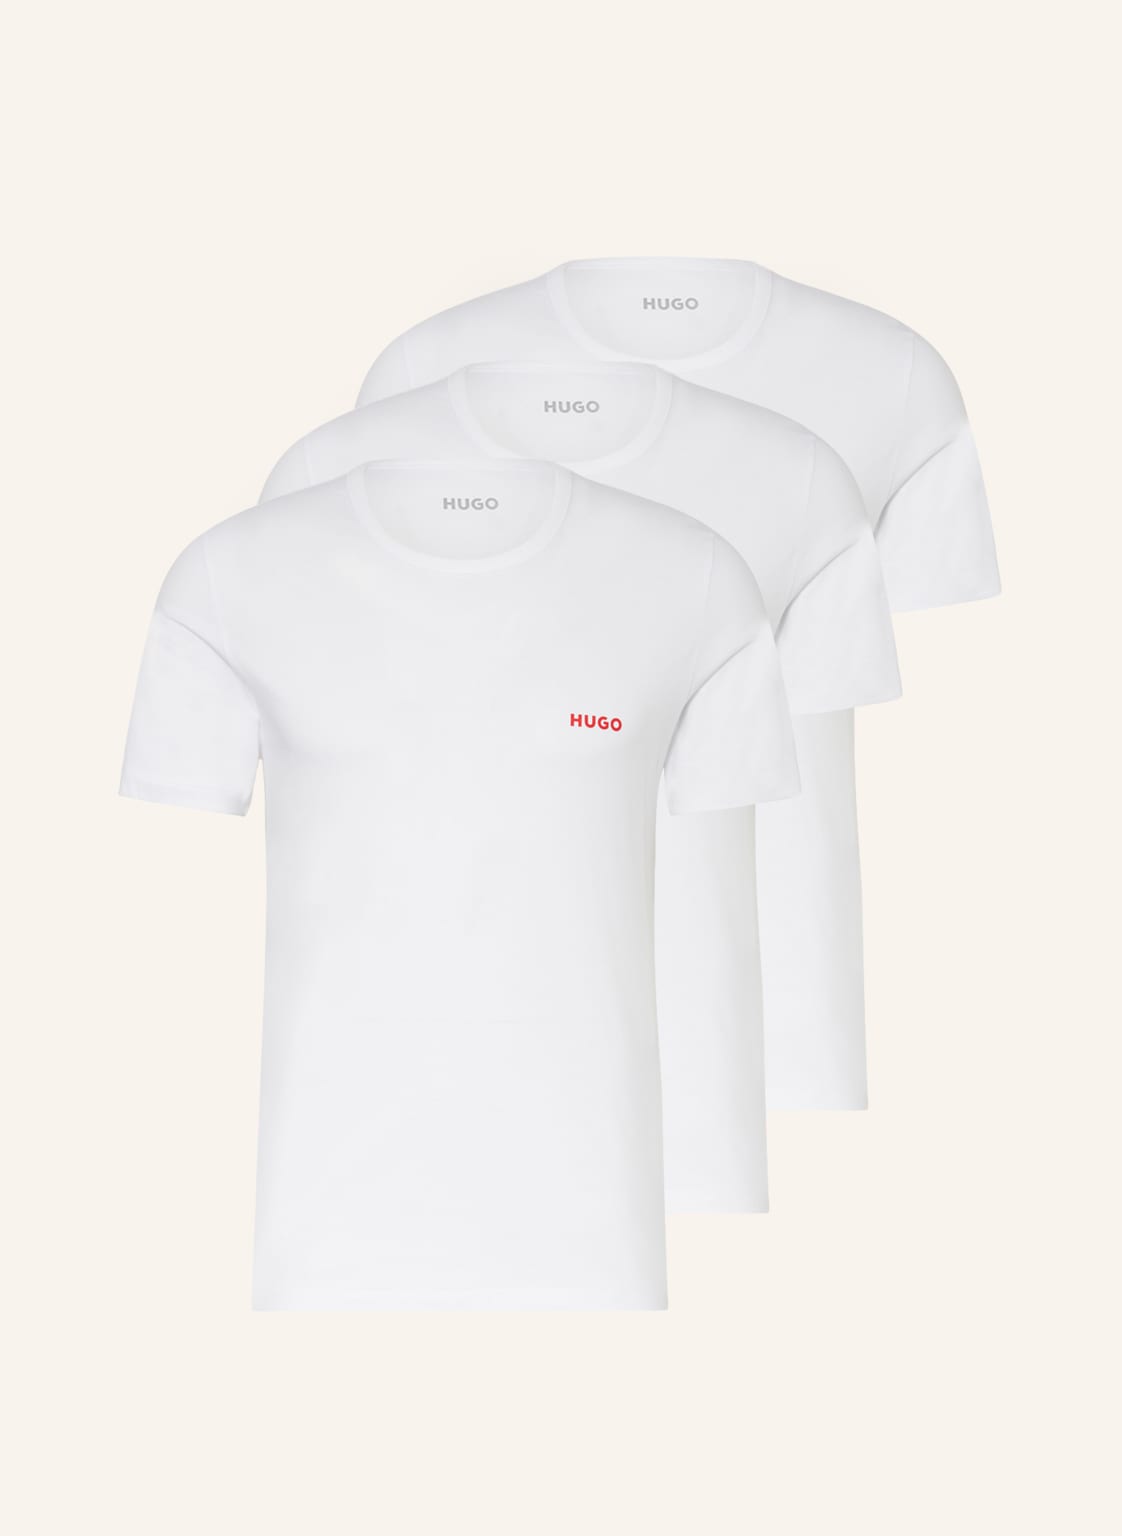 Hugo 3er-Pack T-Shirts weiss von HUGO